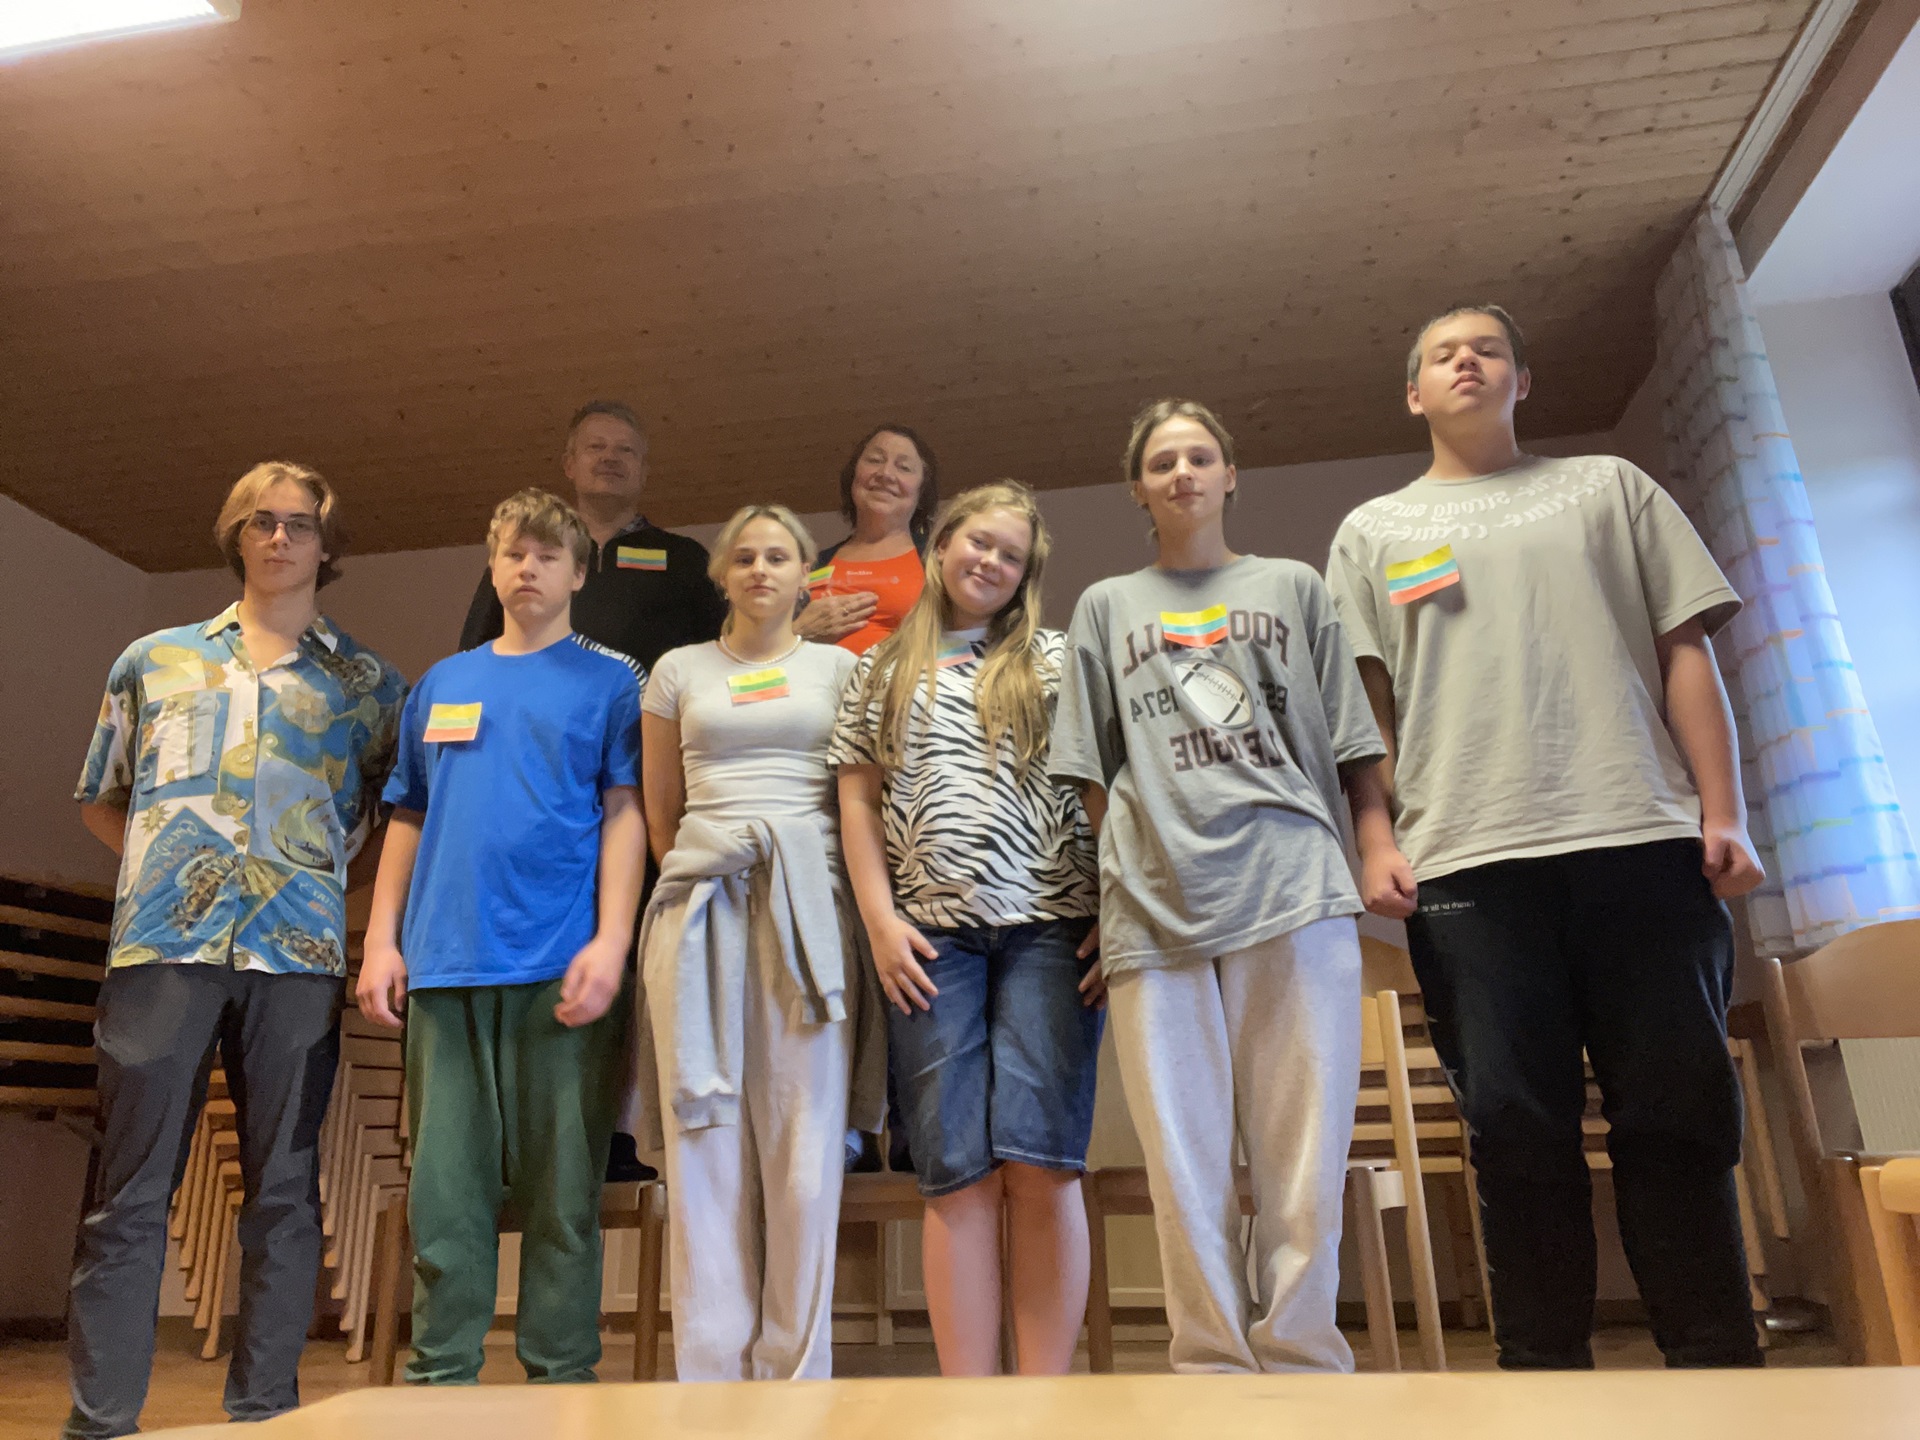 Katalikiško jaunimo grupės stovykla Odenvalde